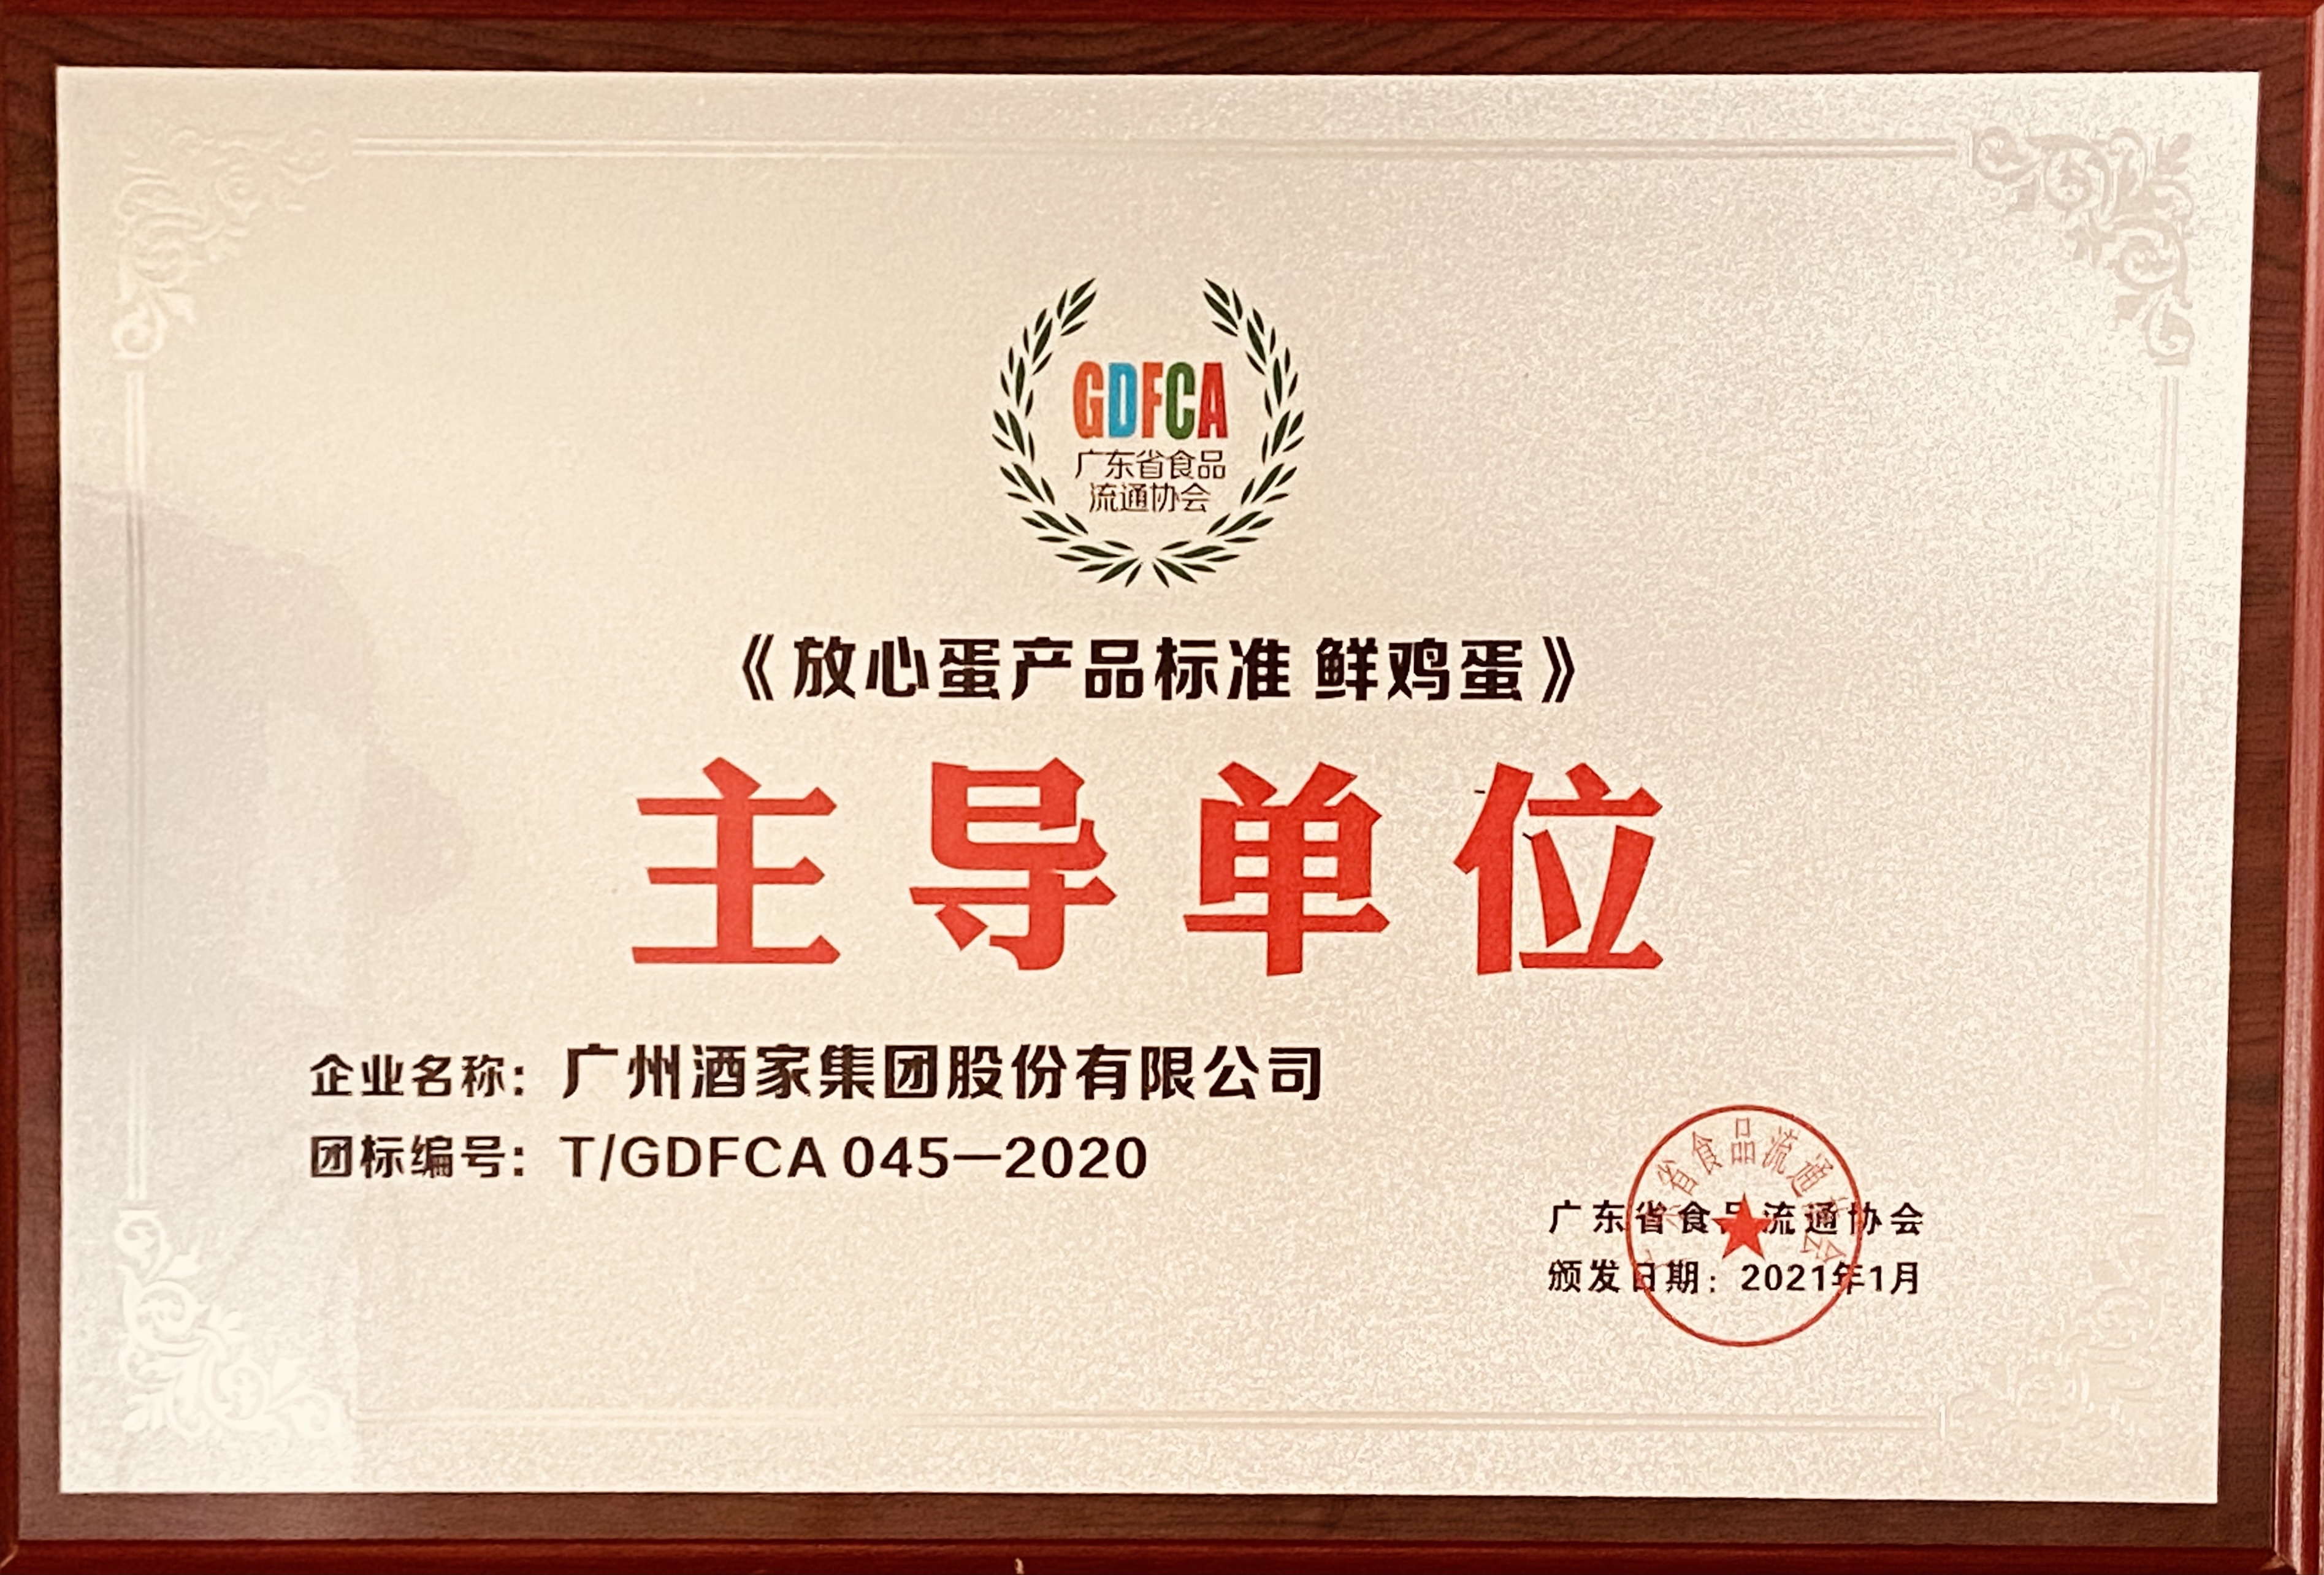 广州酒家集团获评“2020新冠疫情防控示范单位”“广东餐饮食品安全示范单位”